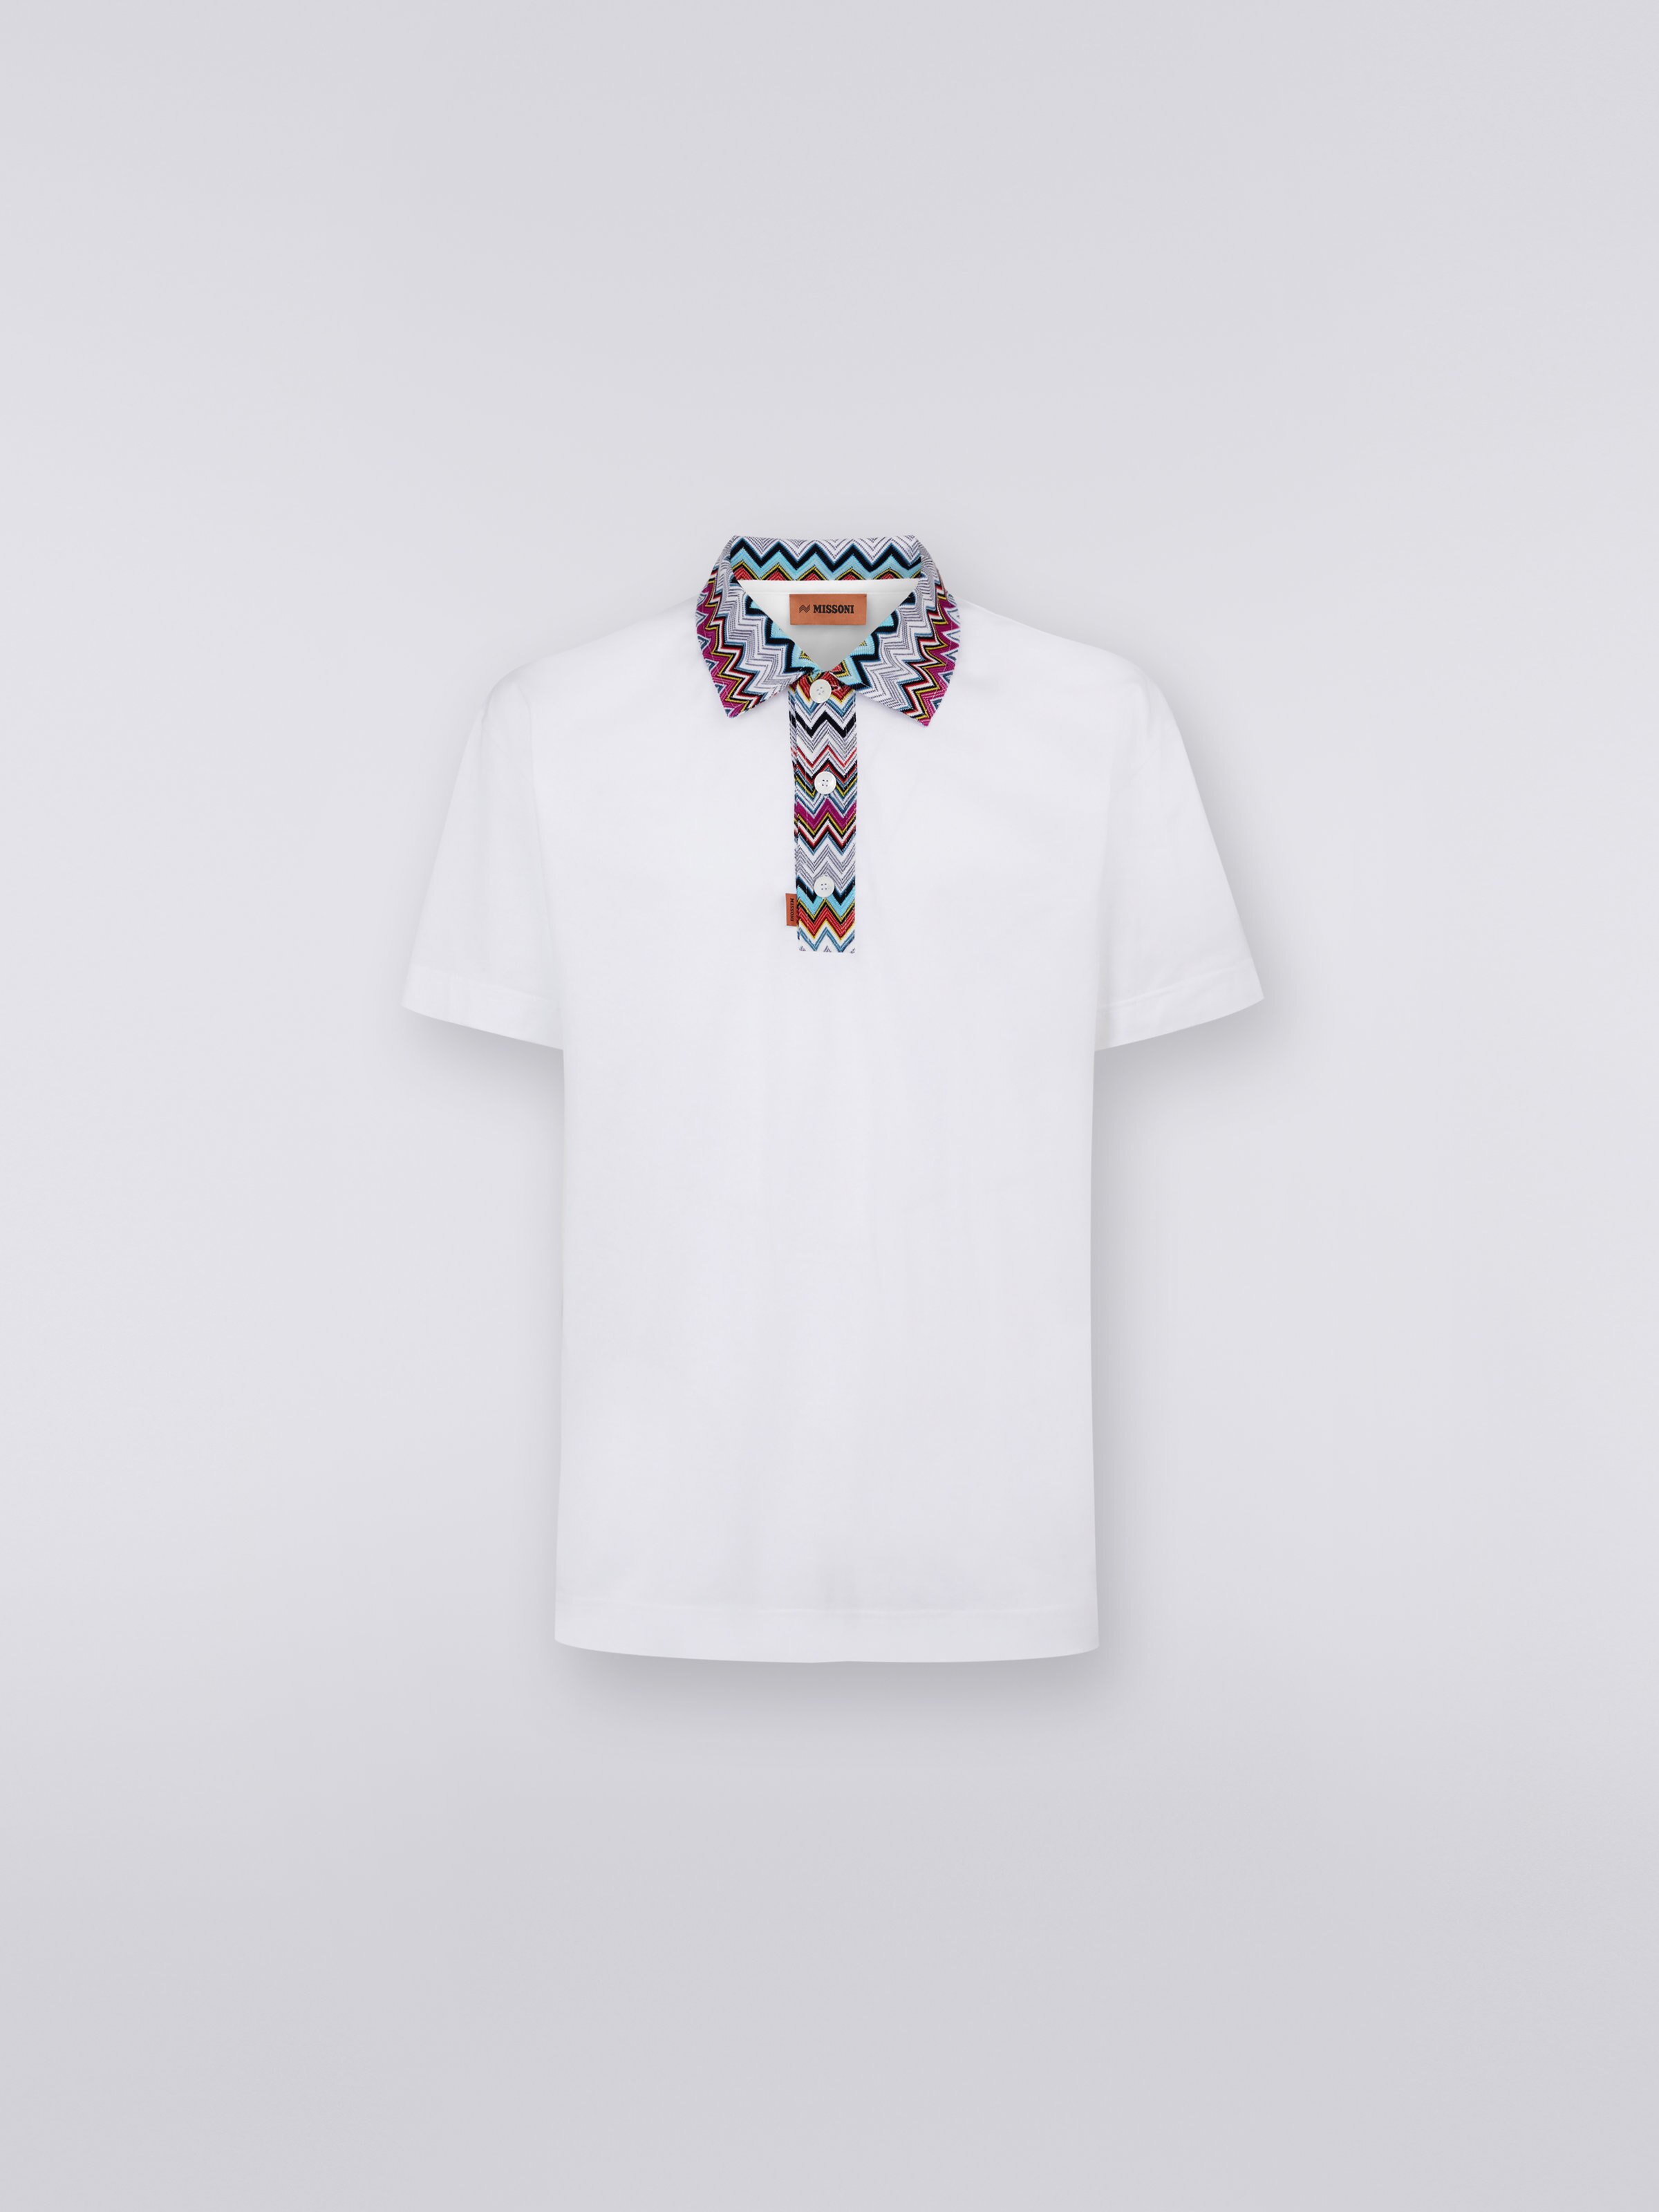 Cotton polo shirt with dégradé chevron pattern, White  - 0